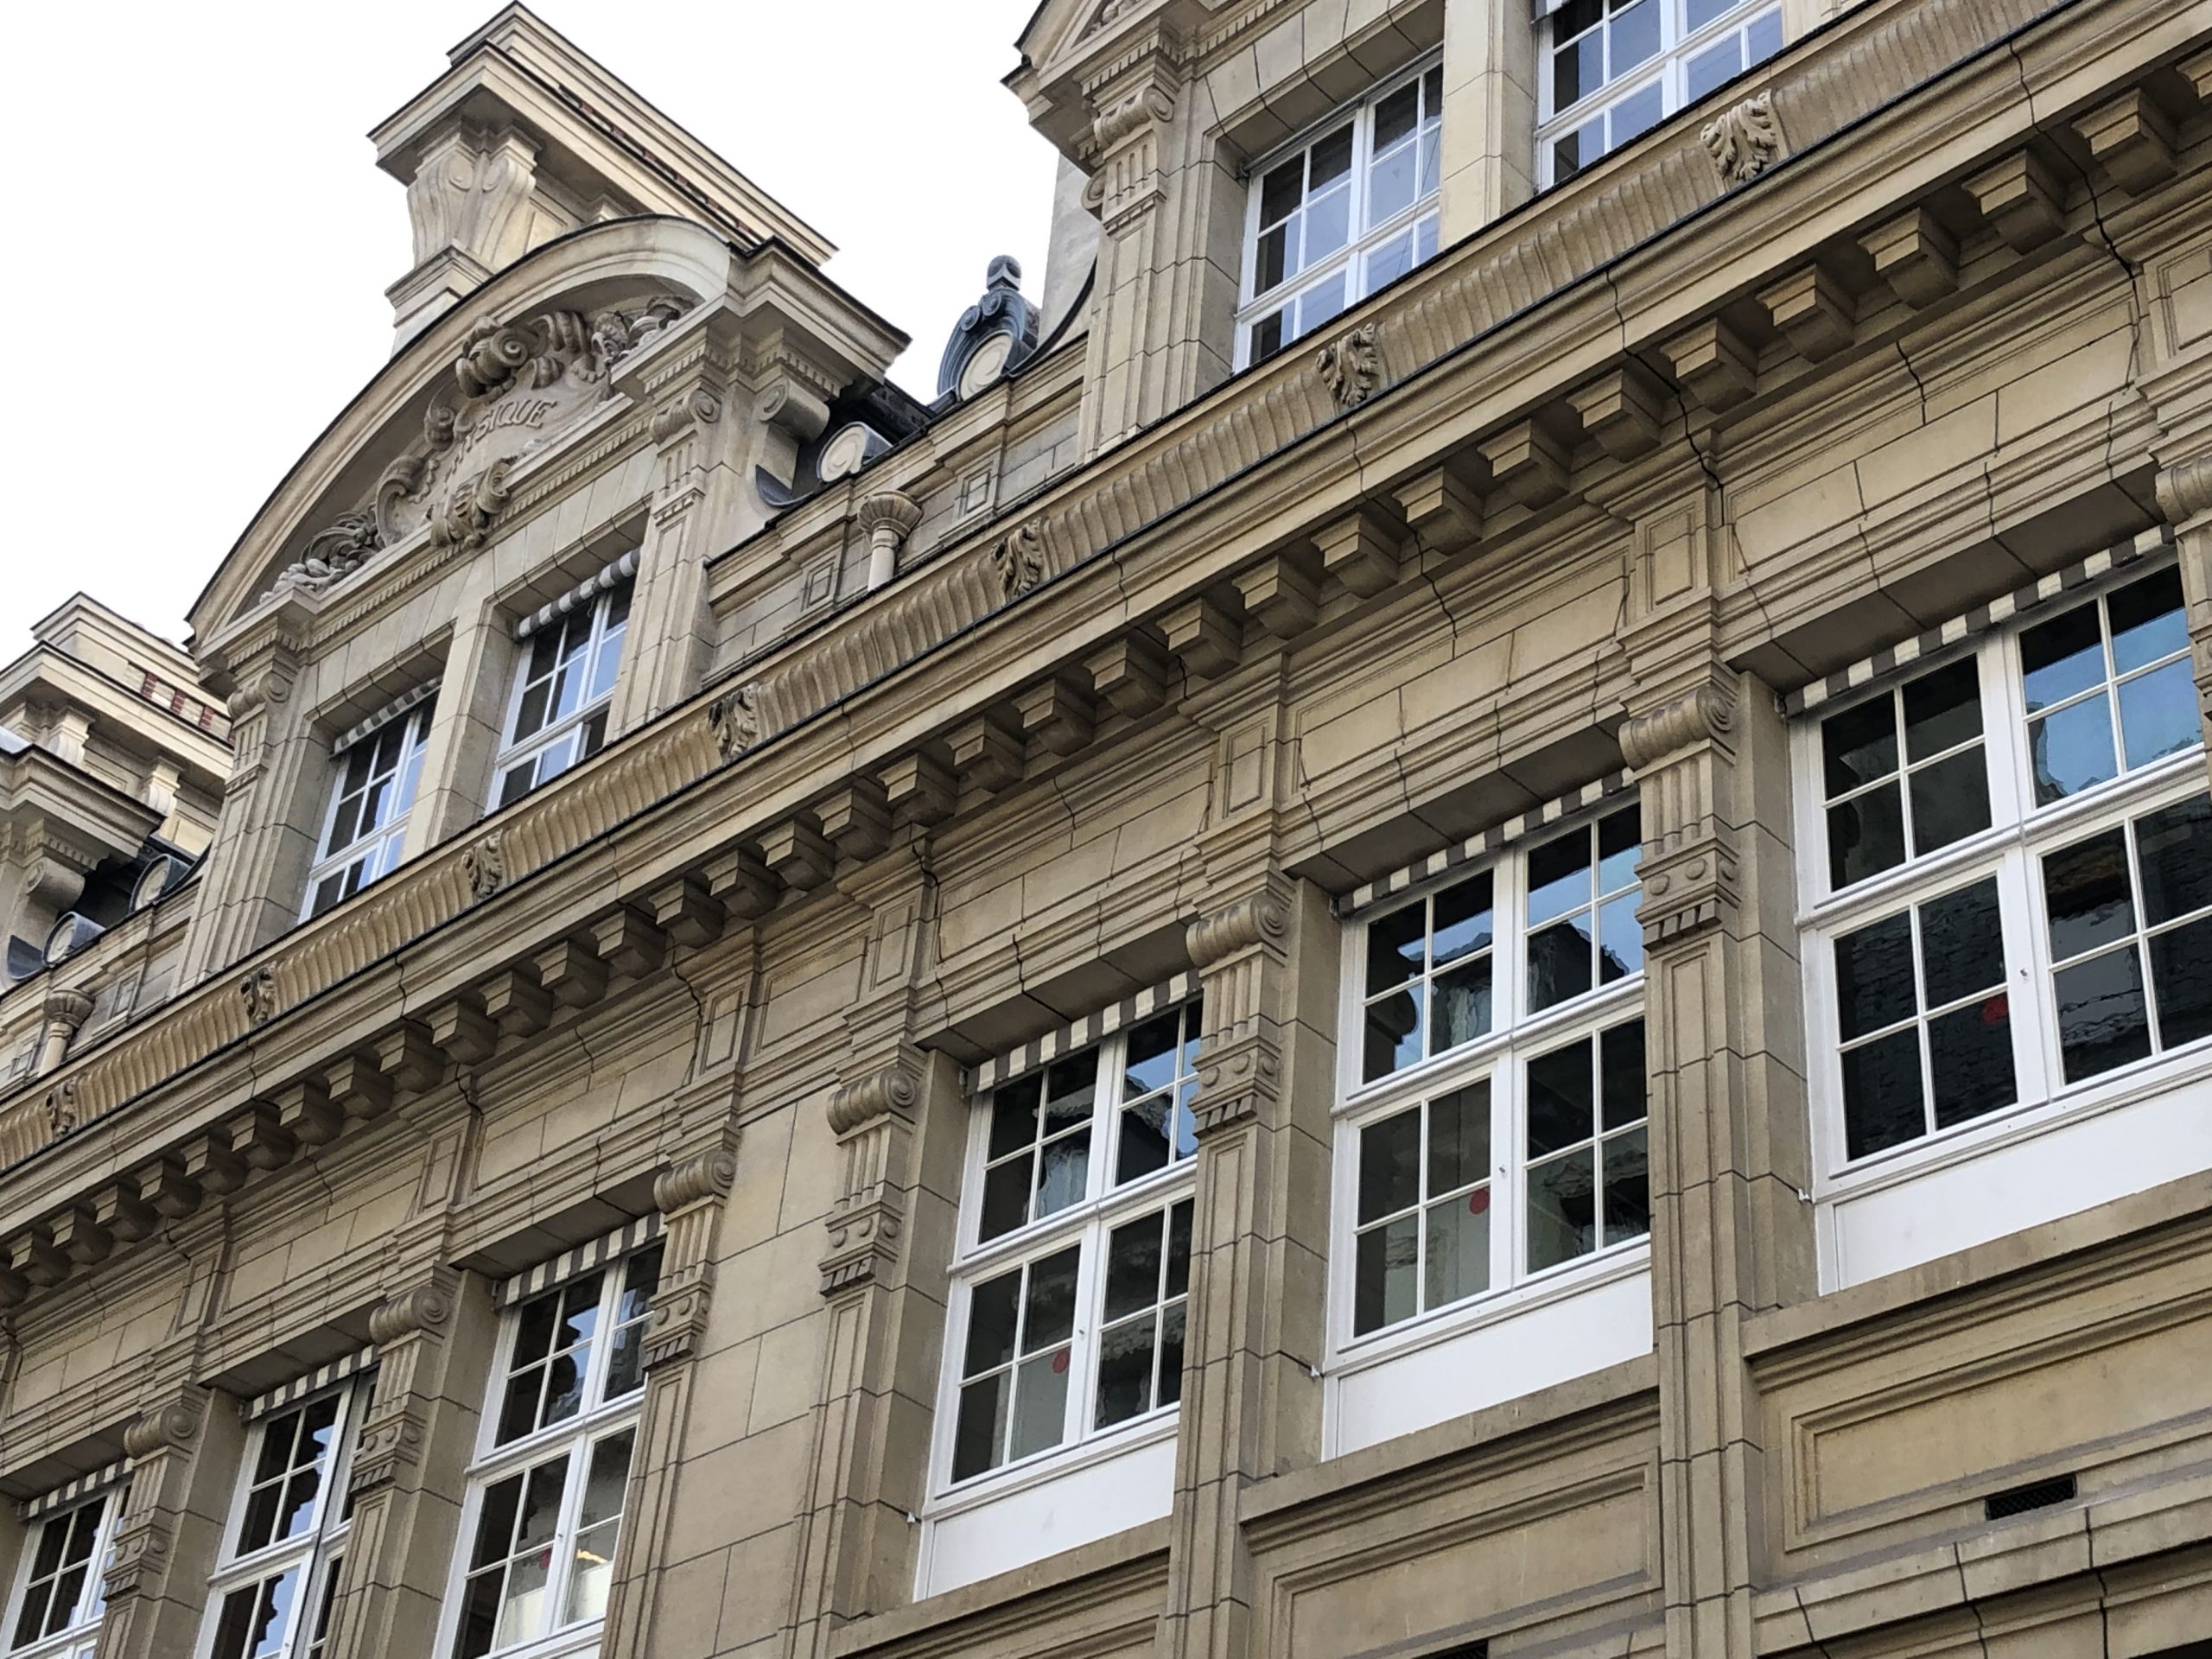 Vue extérieure de la façade de l'université de La Sorbonne, Paris 6